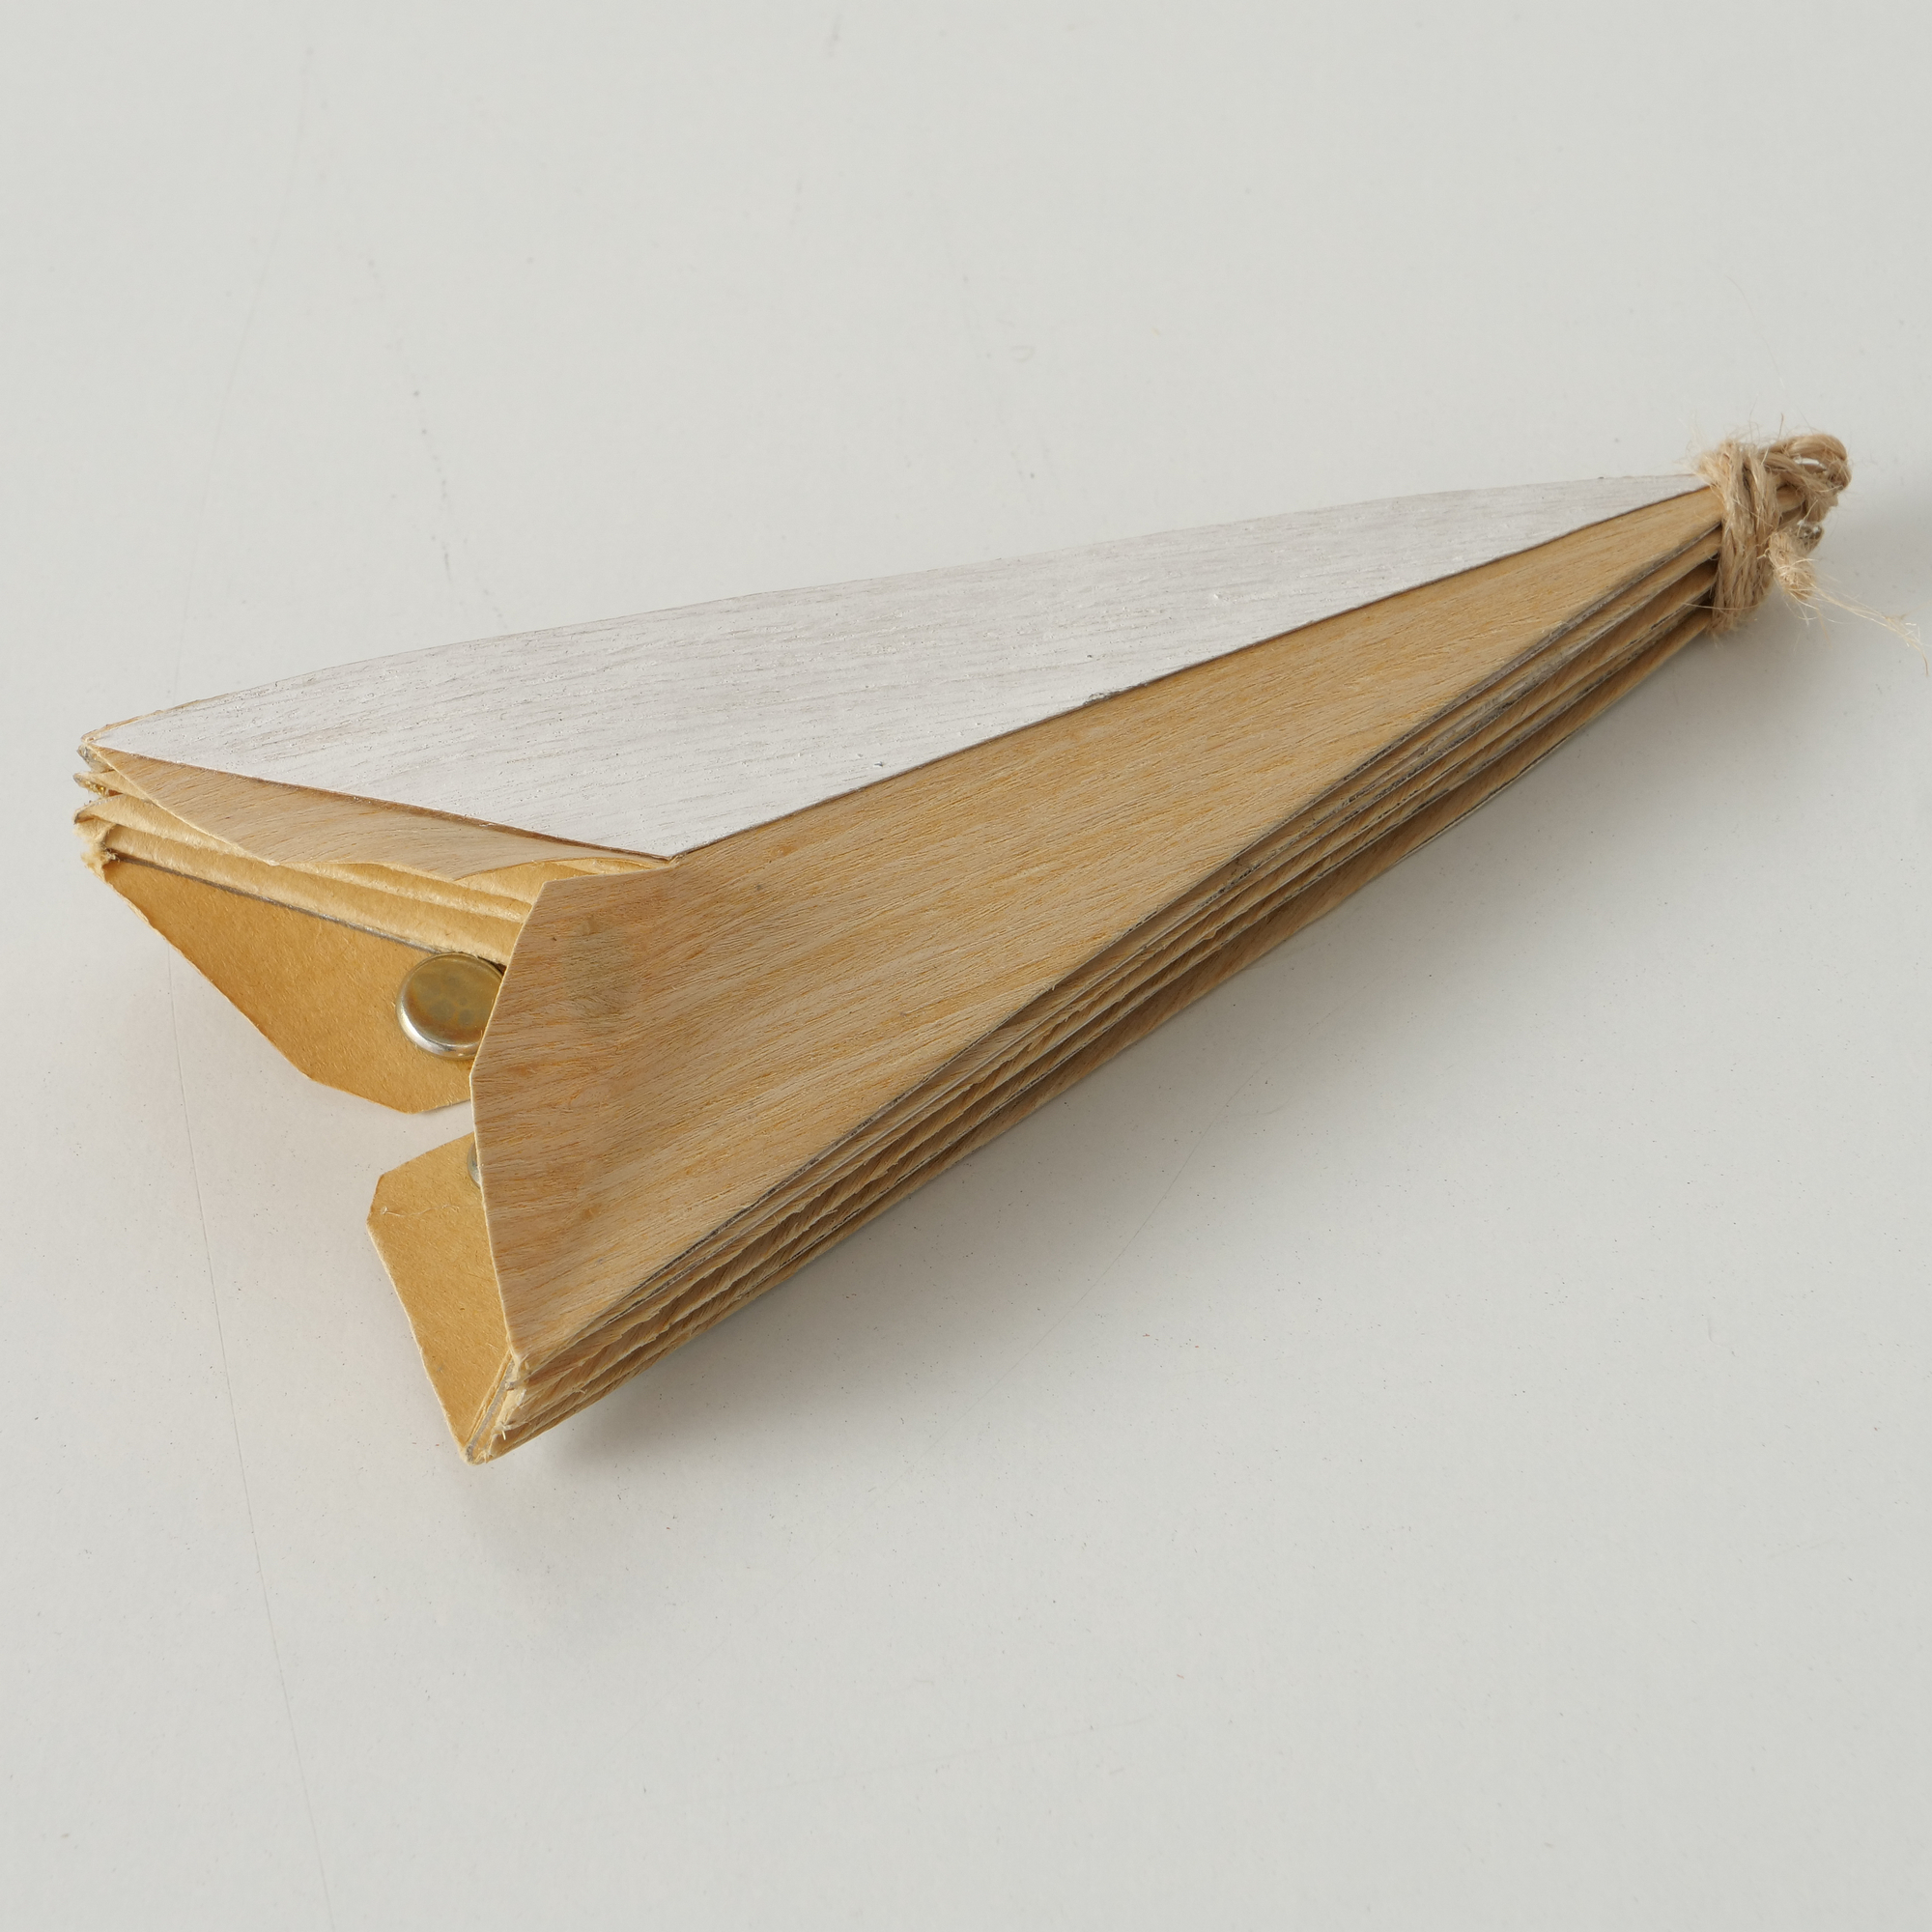 Hängestern 'Kassia' Papier braun/weiß Ø 30 cm, 2 Designs sortiert + product picture